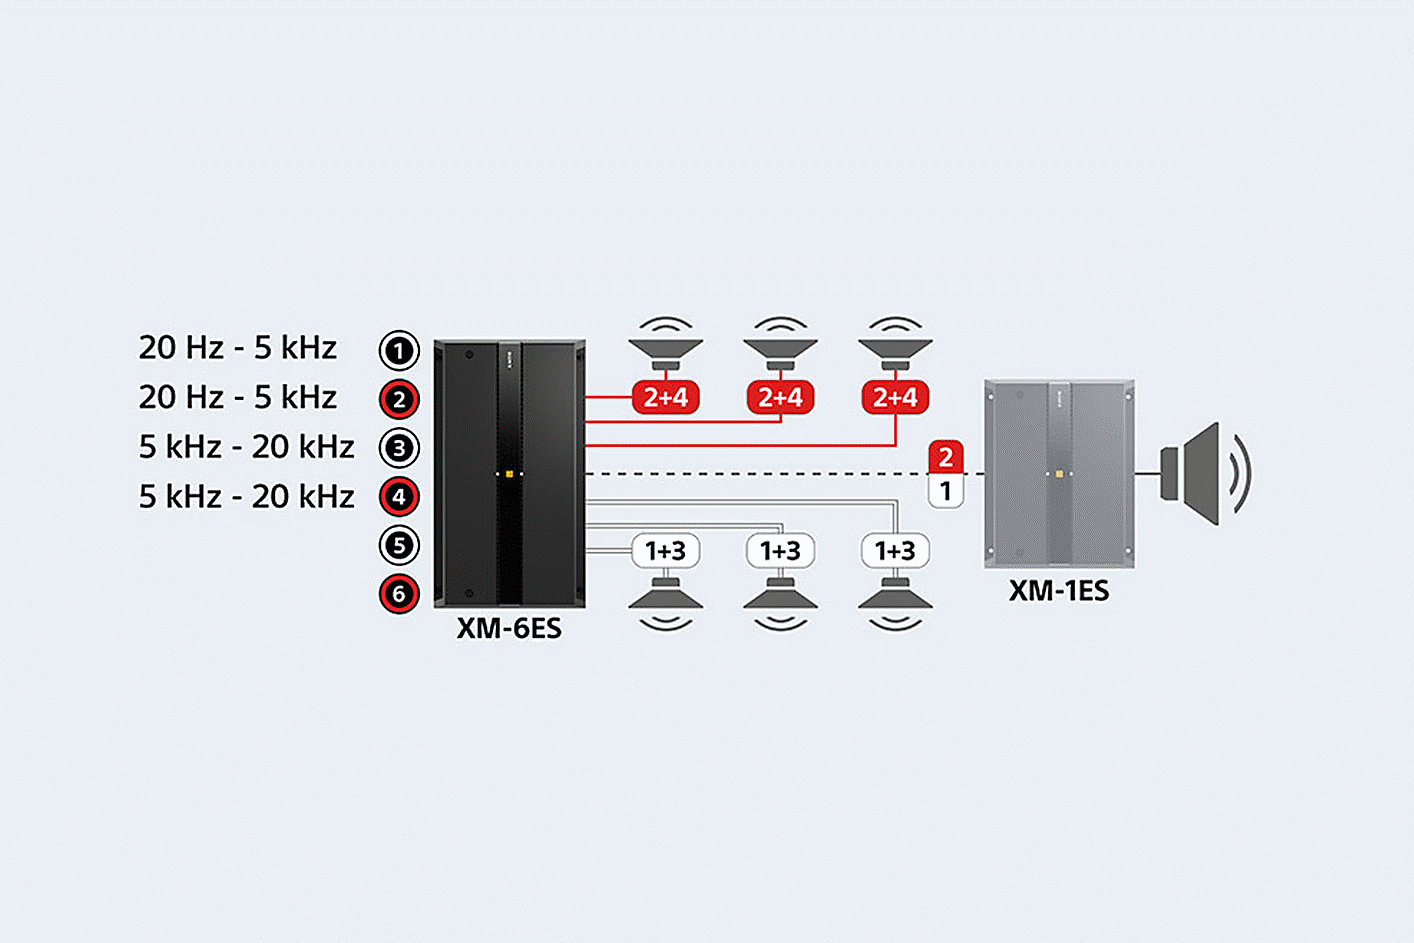 Diagram XM-6ES terhubung ke enam speaker dan XM-1ES, setelan suara ditampilkan di sebelah port 1, 2, 3, & 4